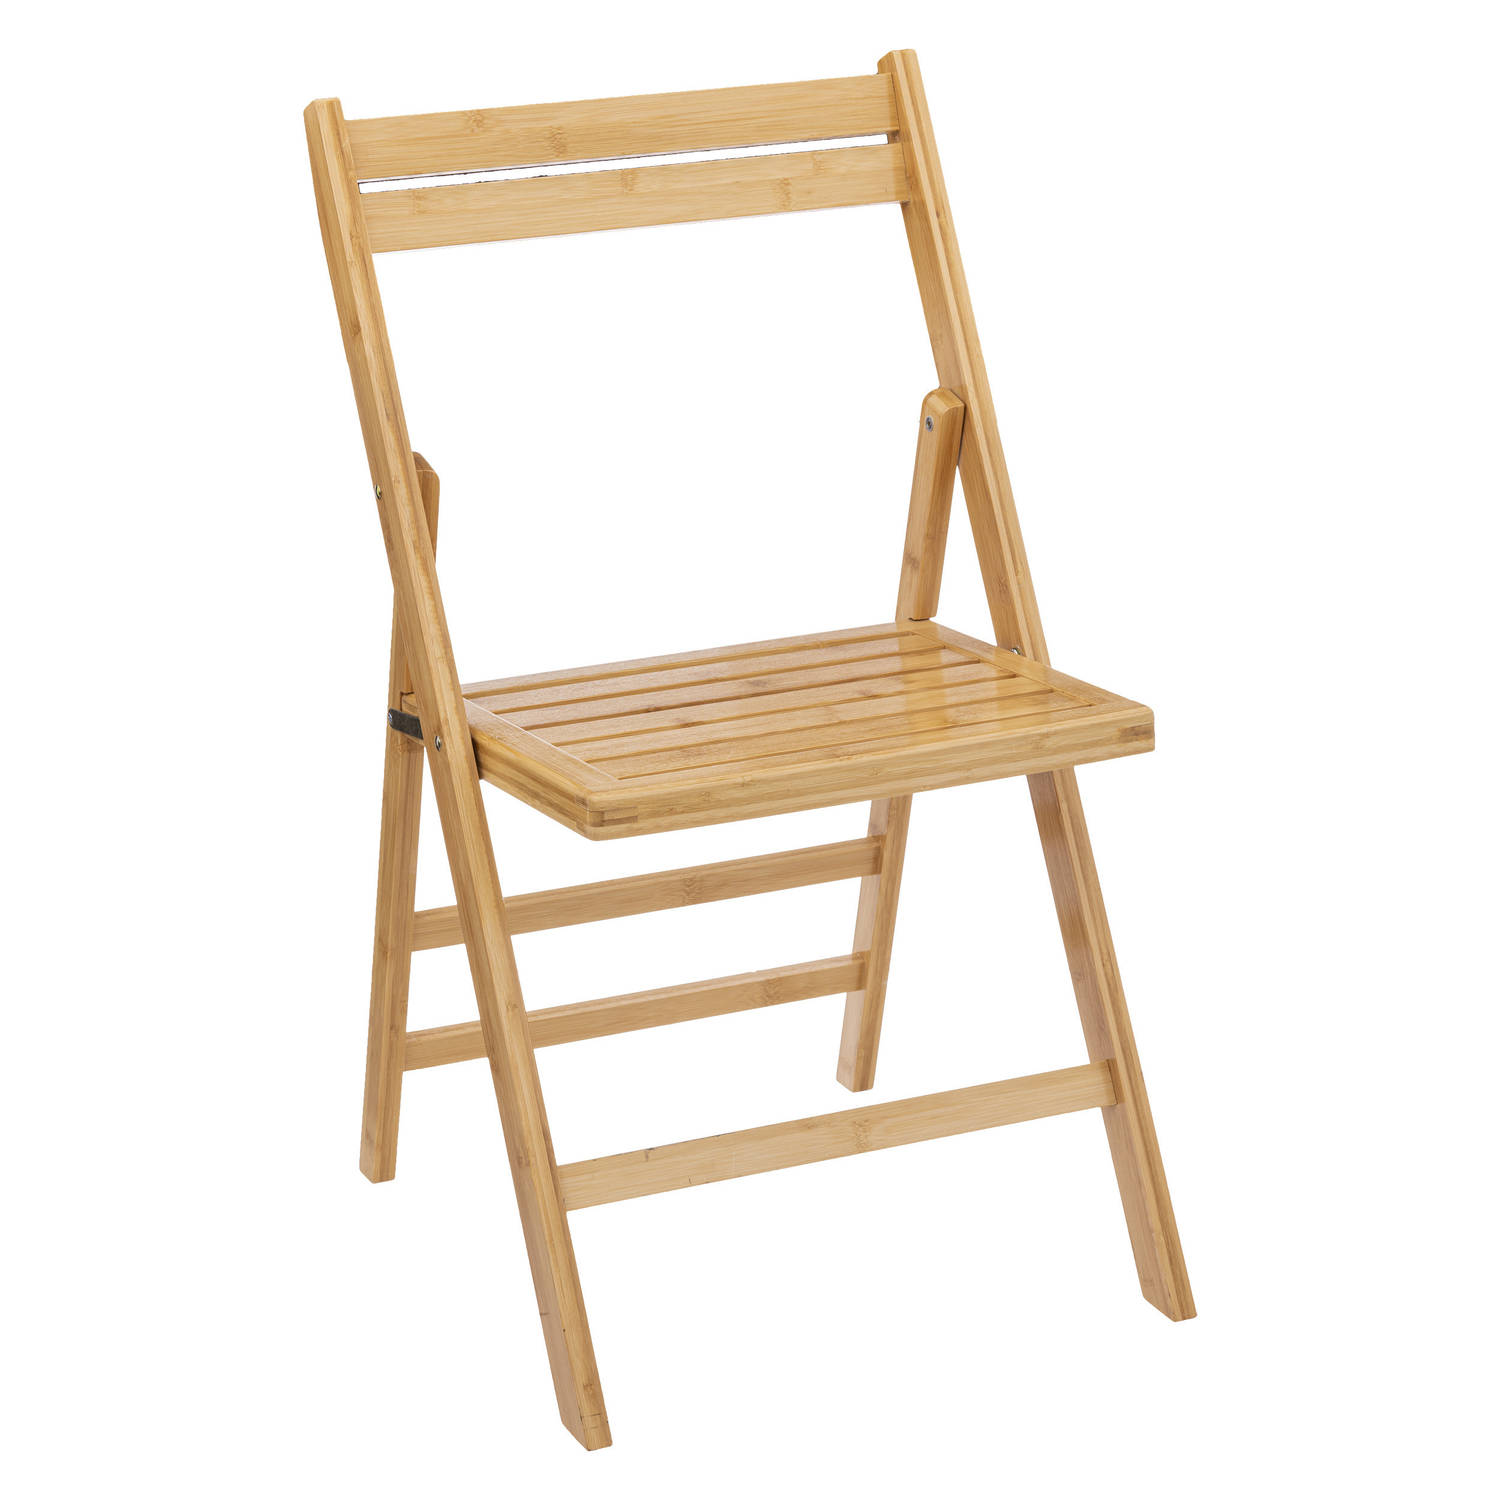 5Five Klapstoel van Bamboe hout ichtbruin - 46 x 44 x 78 cm - bijzet stoelen - Klapstoelen